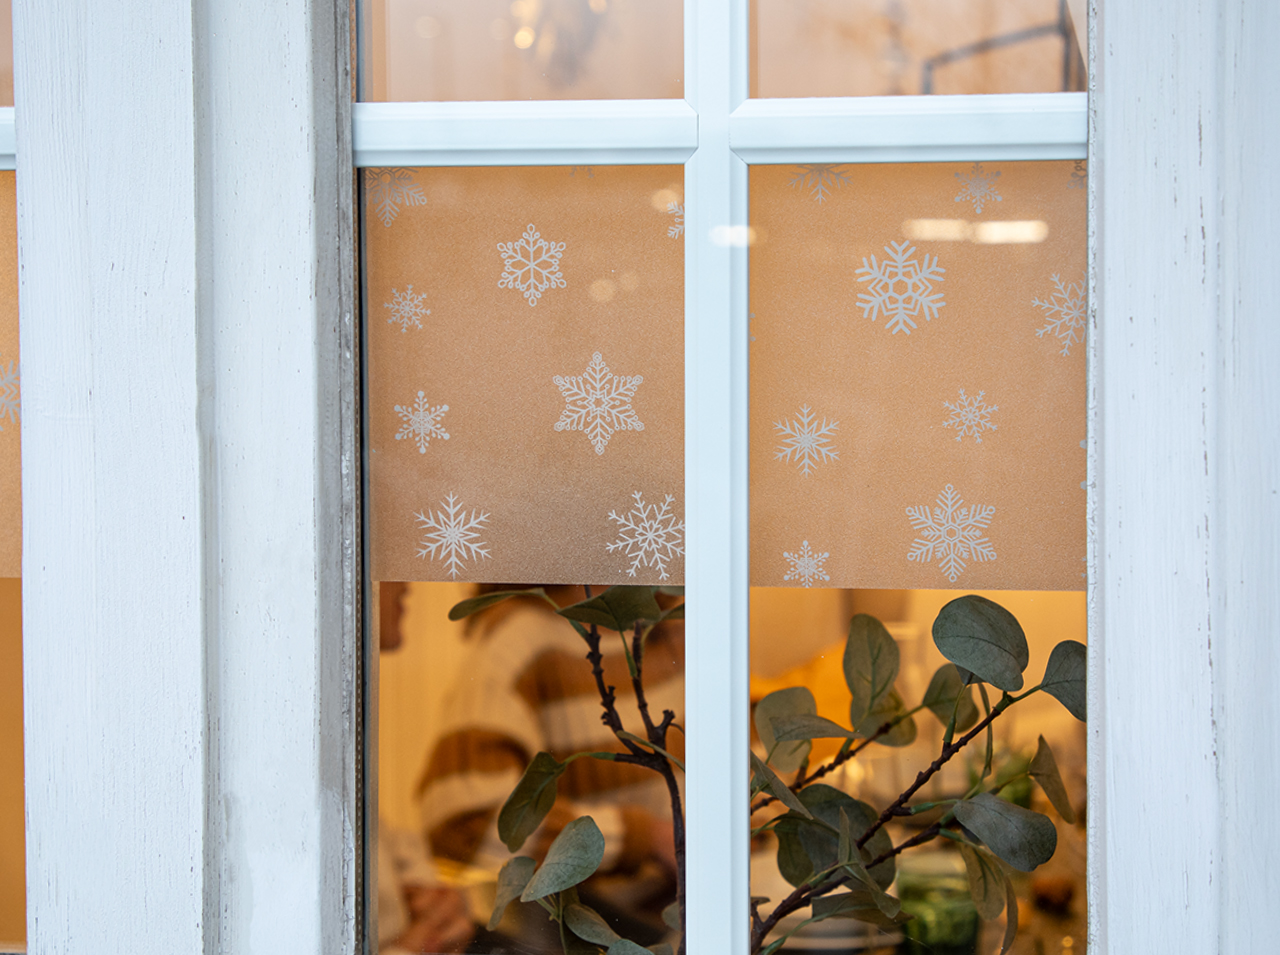 Fenster mit Sichtschutz-Bordüre im Design von Schneeflocken gestaltet.